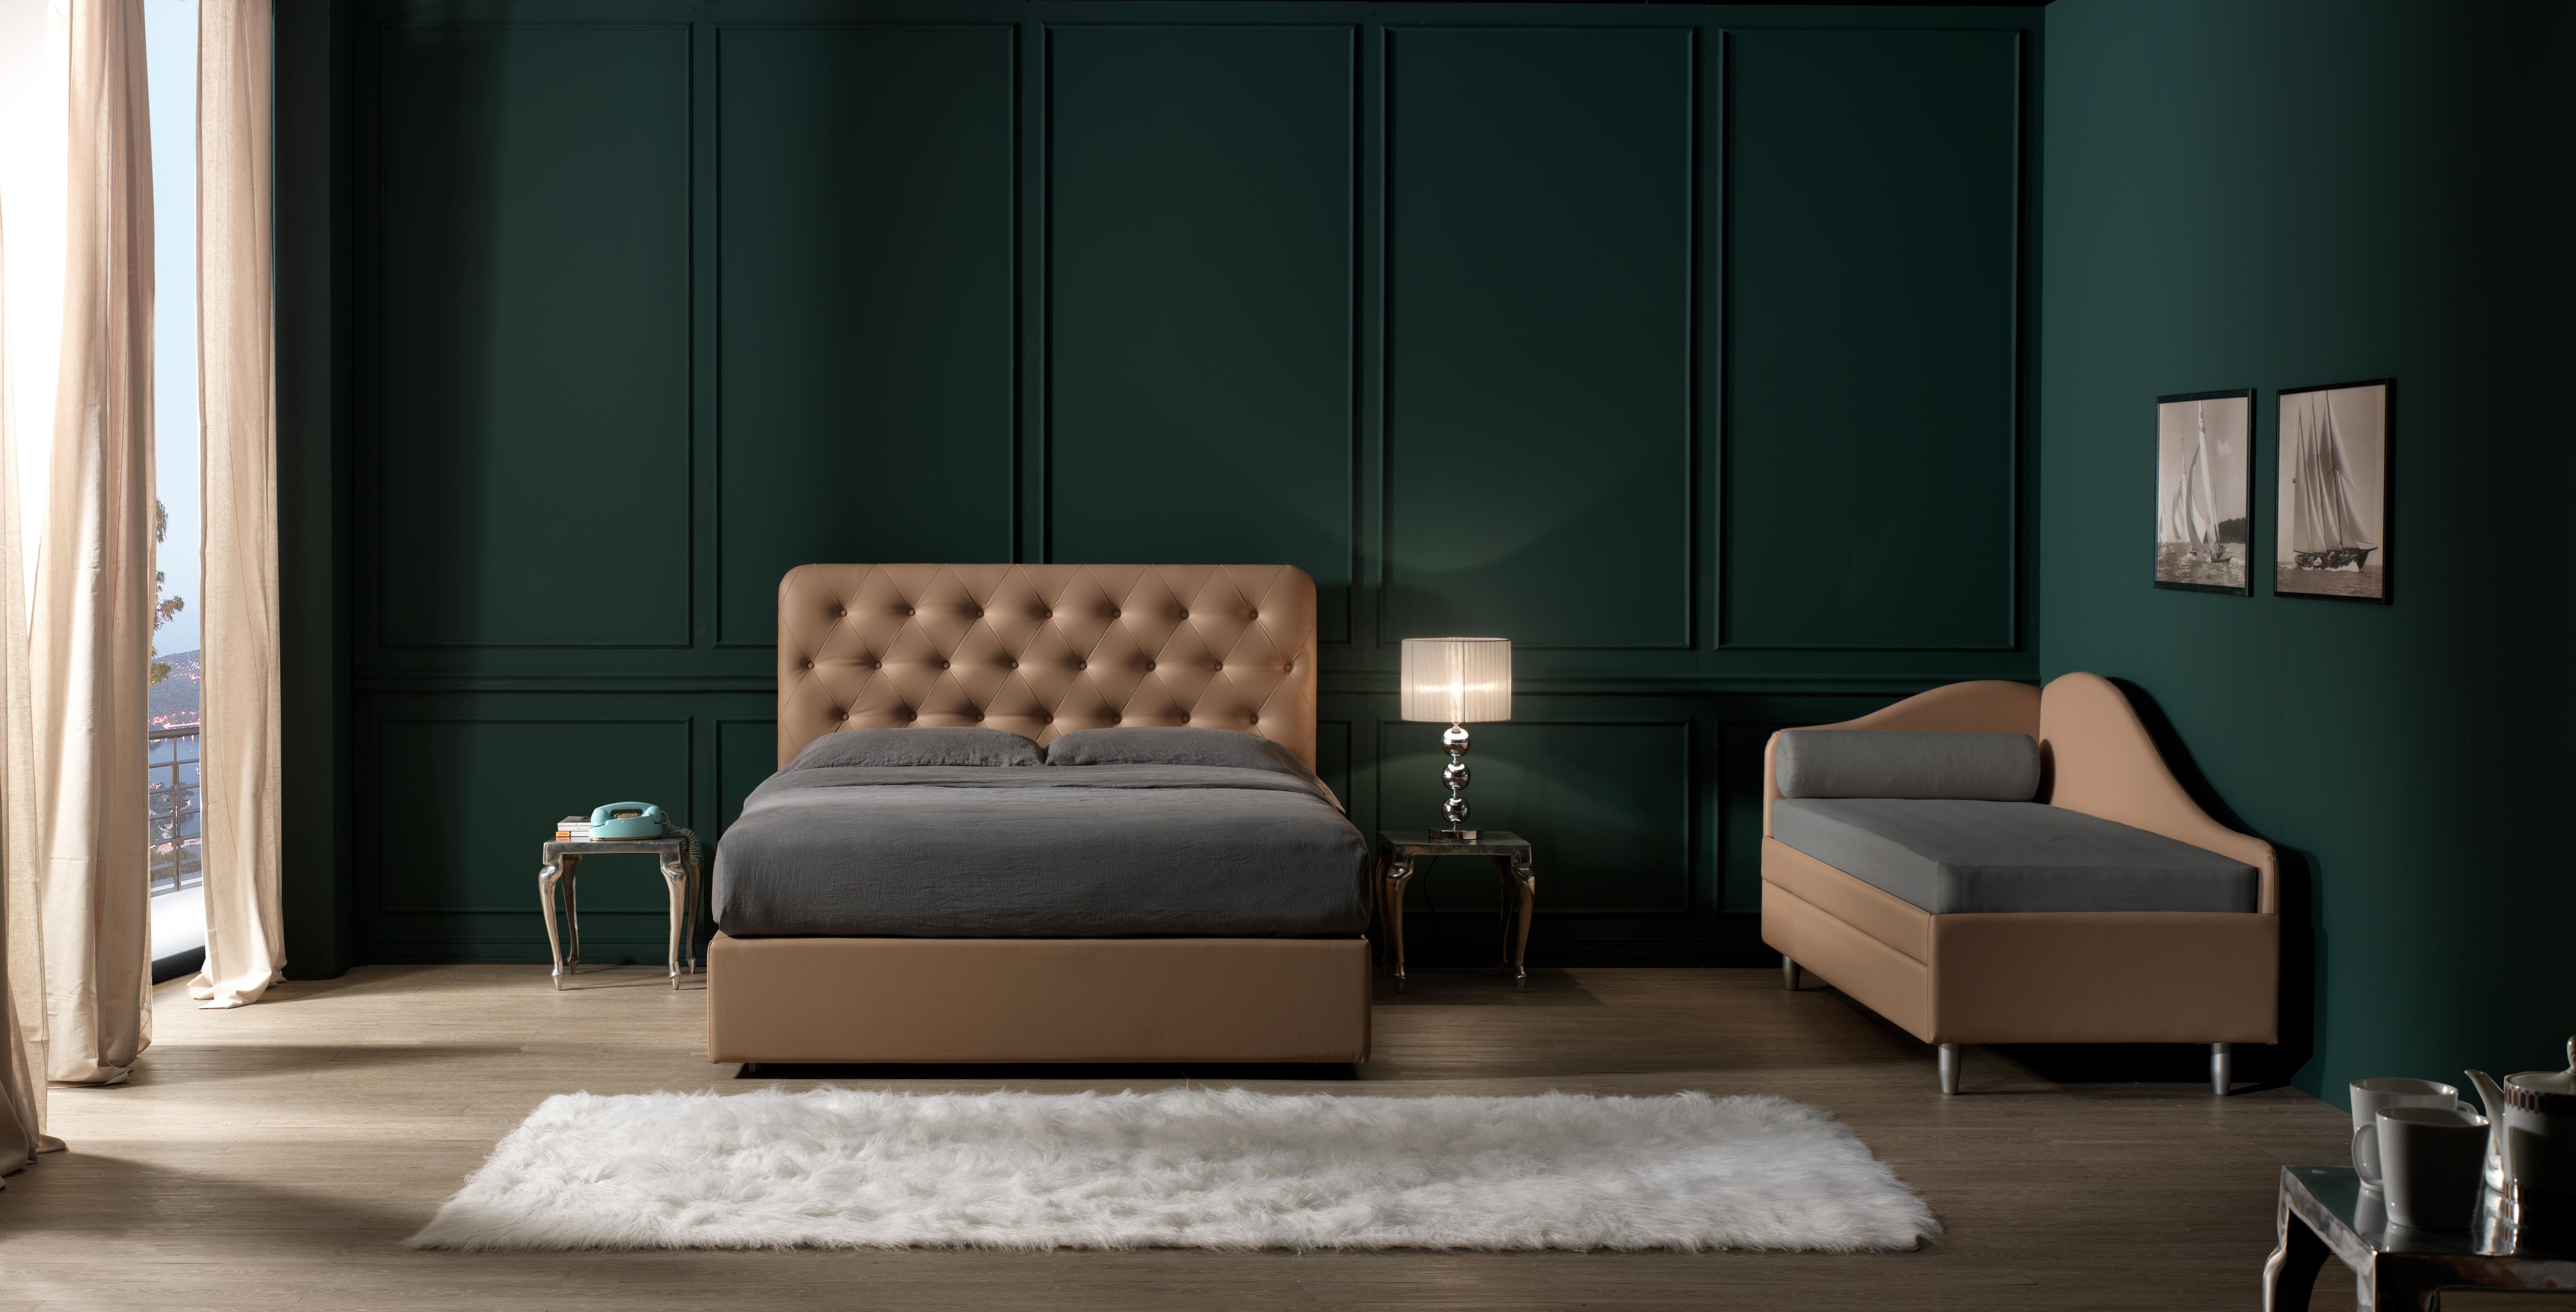 Parma Reti Hotellerie reti letti materassi divani per hotel